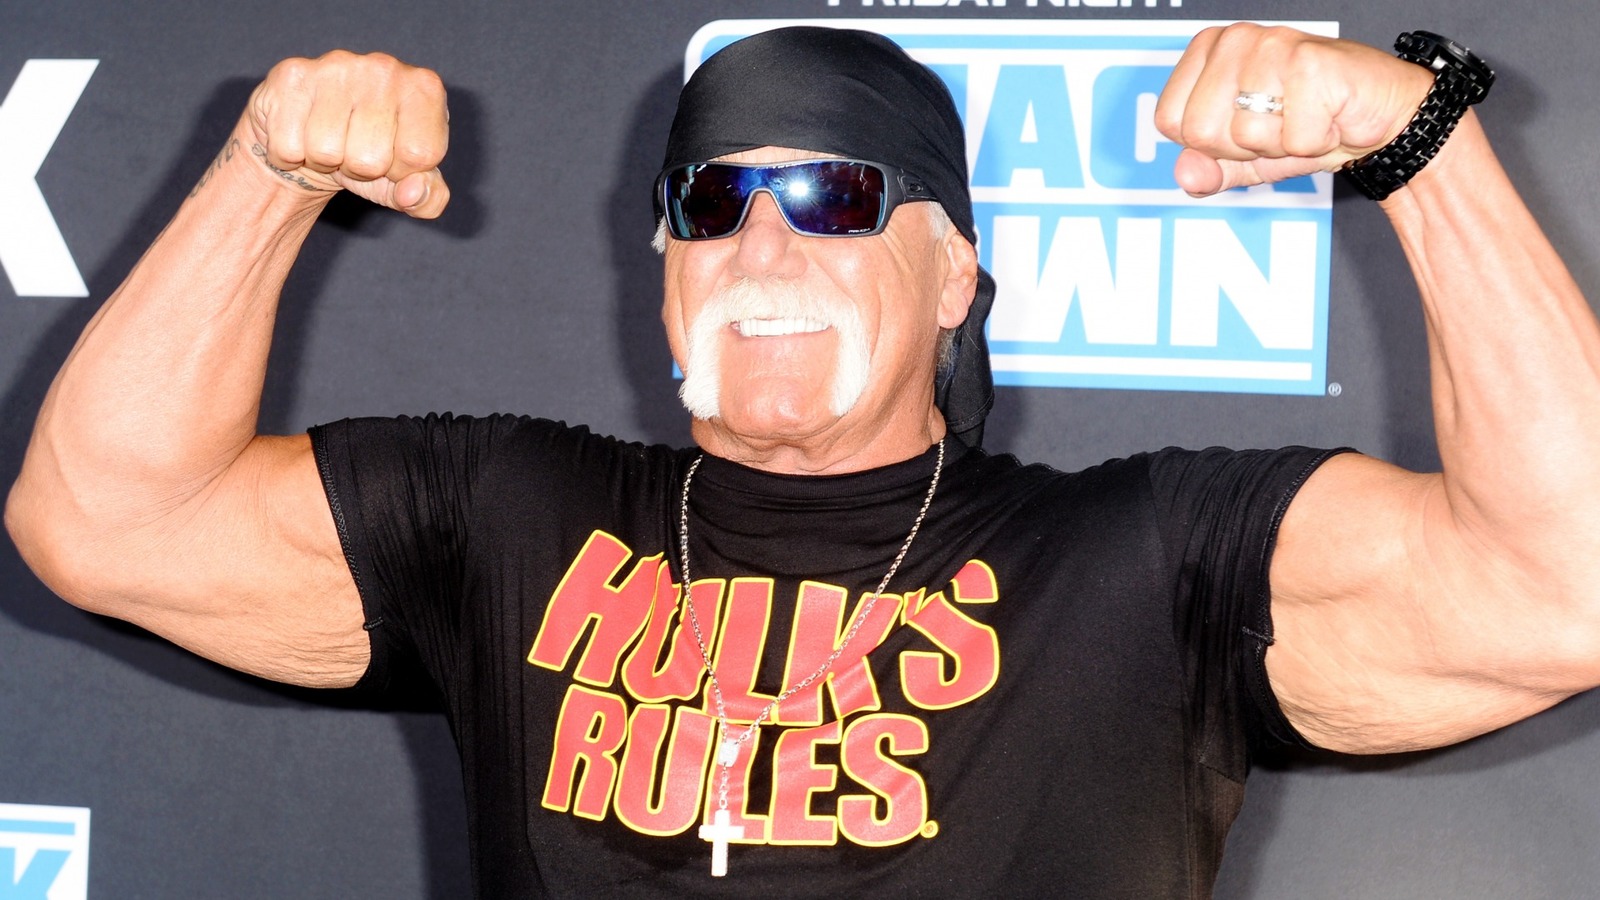 Se informa que el hijo de Hulk Hogan fue arrestado por DUI, recordando un notorio incidente anterior